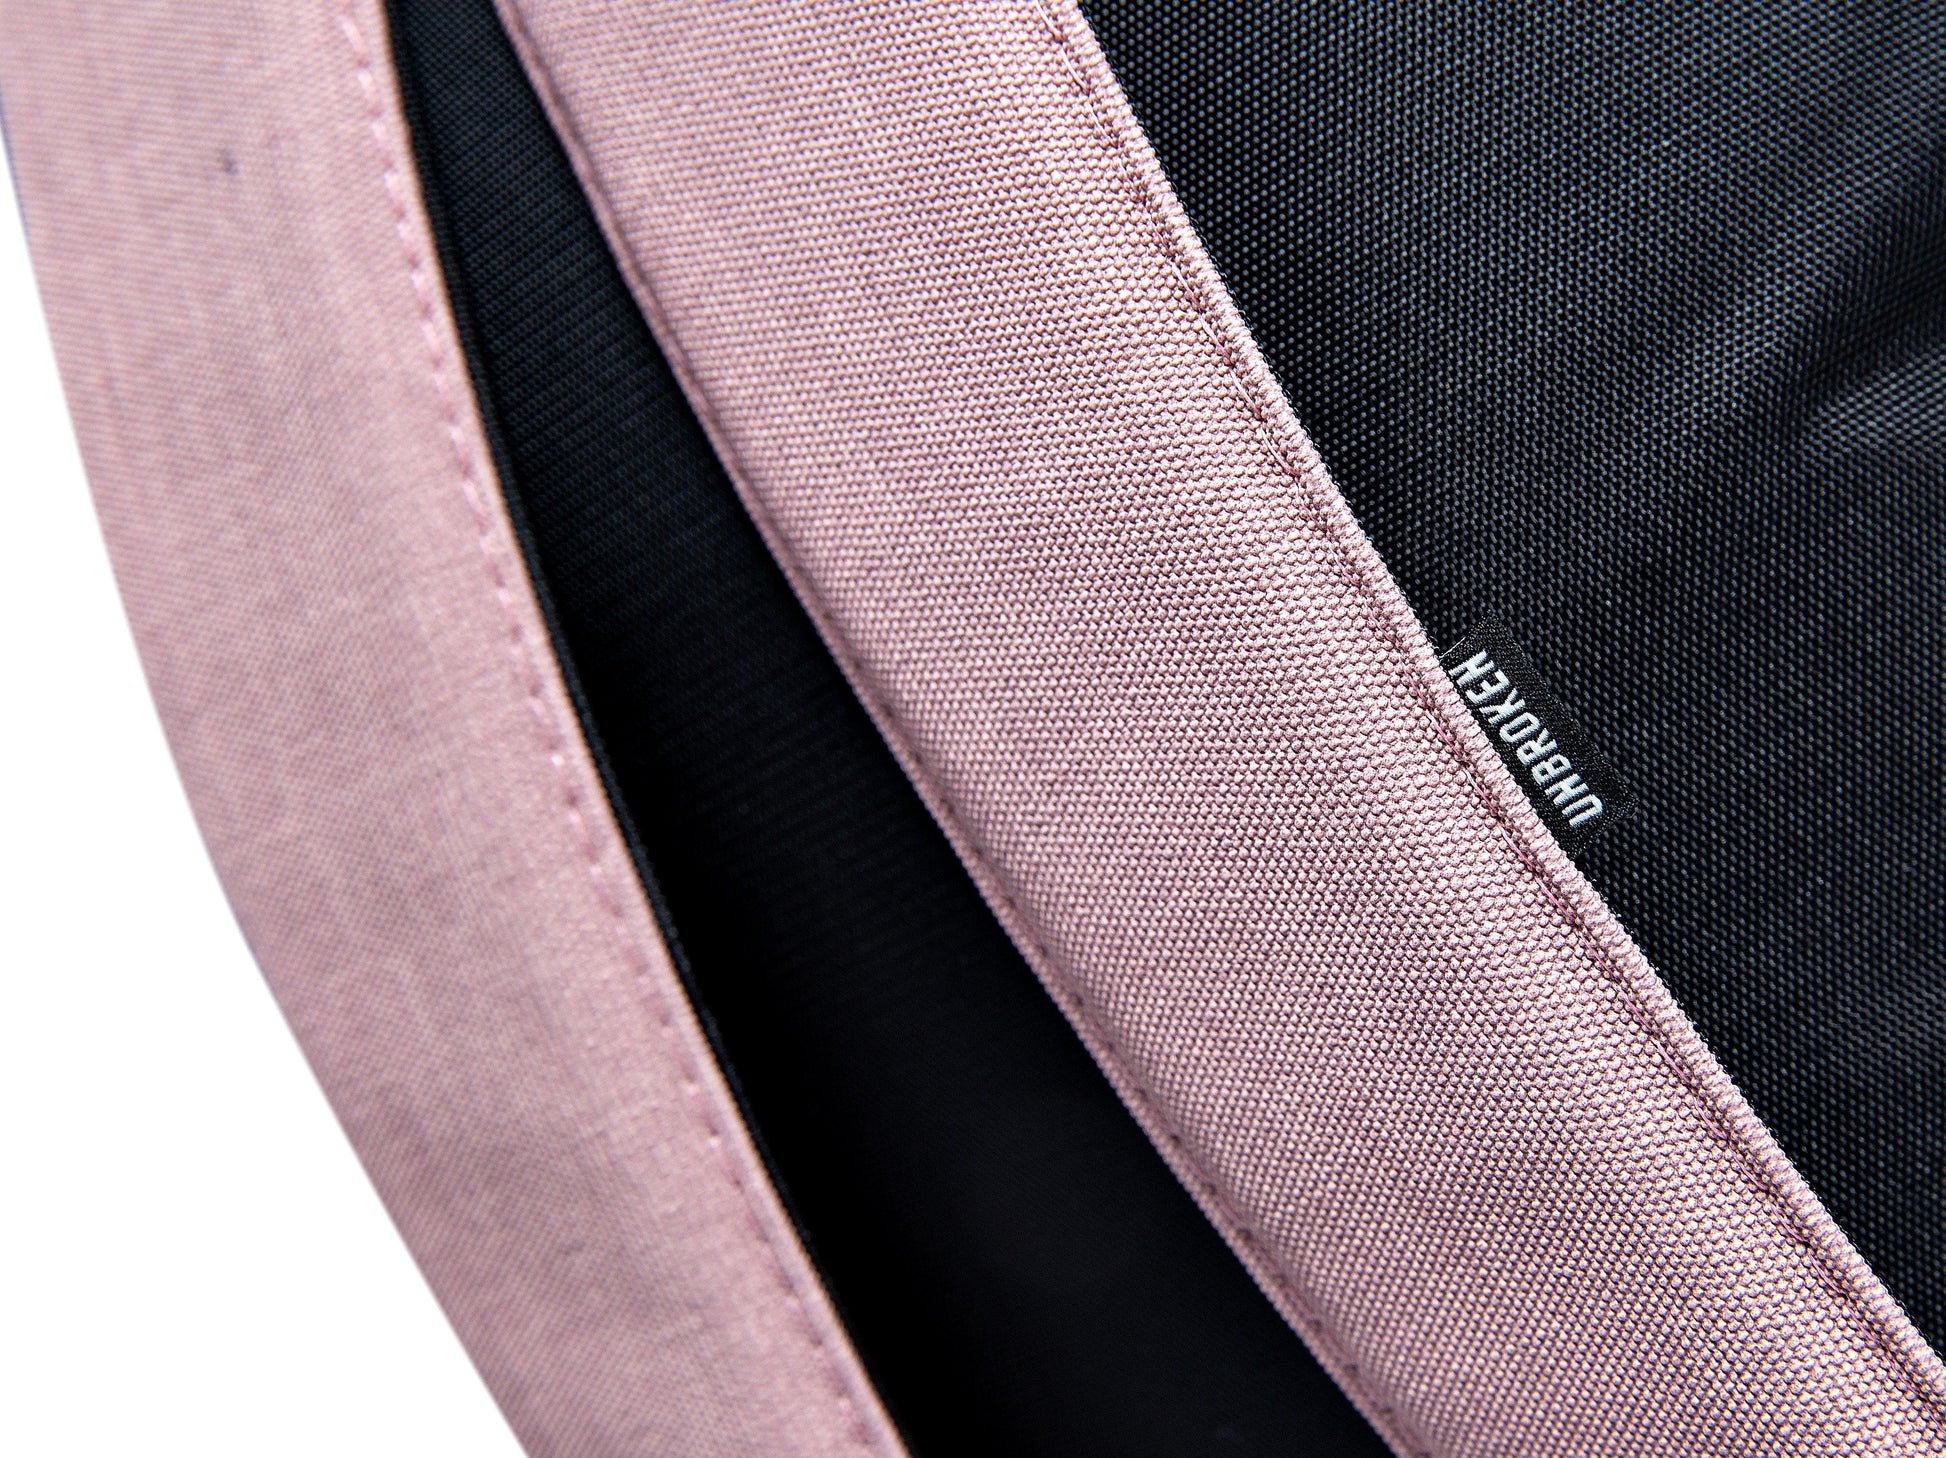 Morral rosado - backpack deportivo unbroken